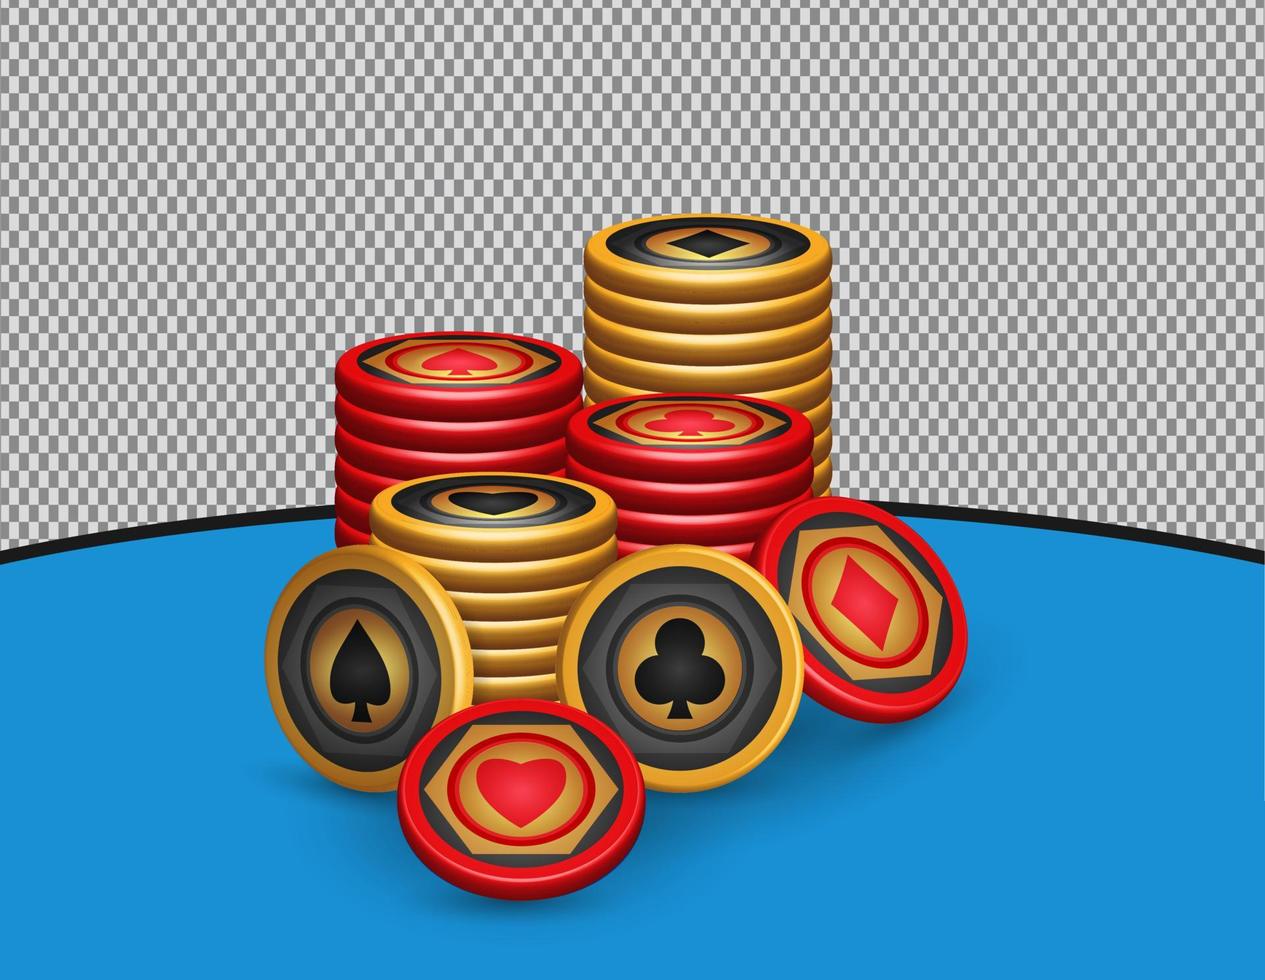 juego de fichas de póquer dorado y rojo, con símbolos diamantes, palos, corazones, espadas, elementos de diseño de juegos, ilustración de vectores 3d, pila de fichas para casino